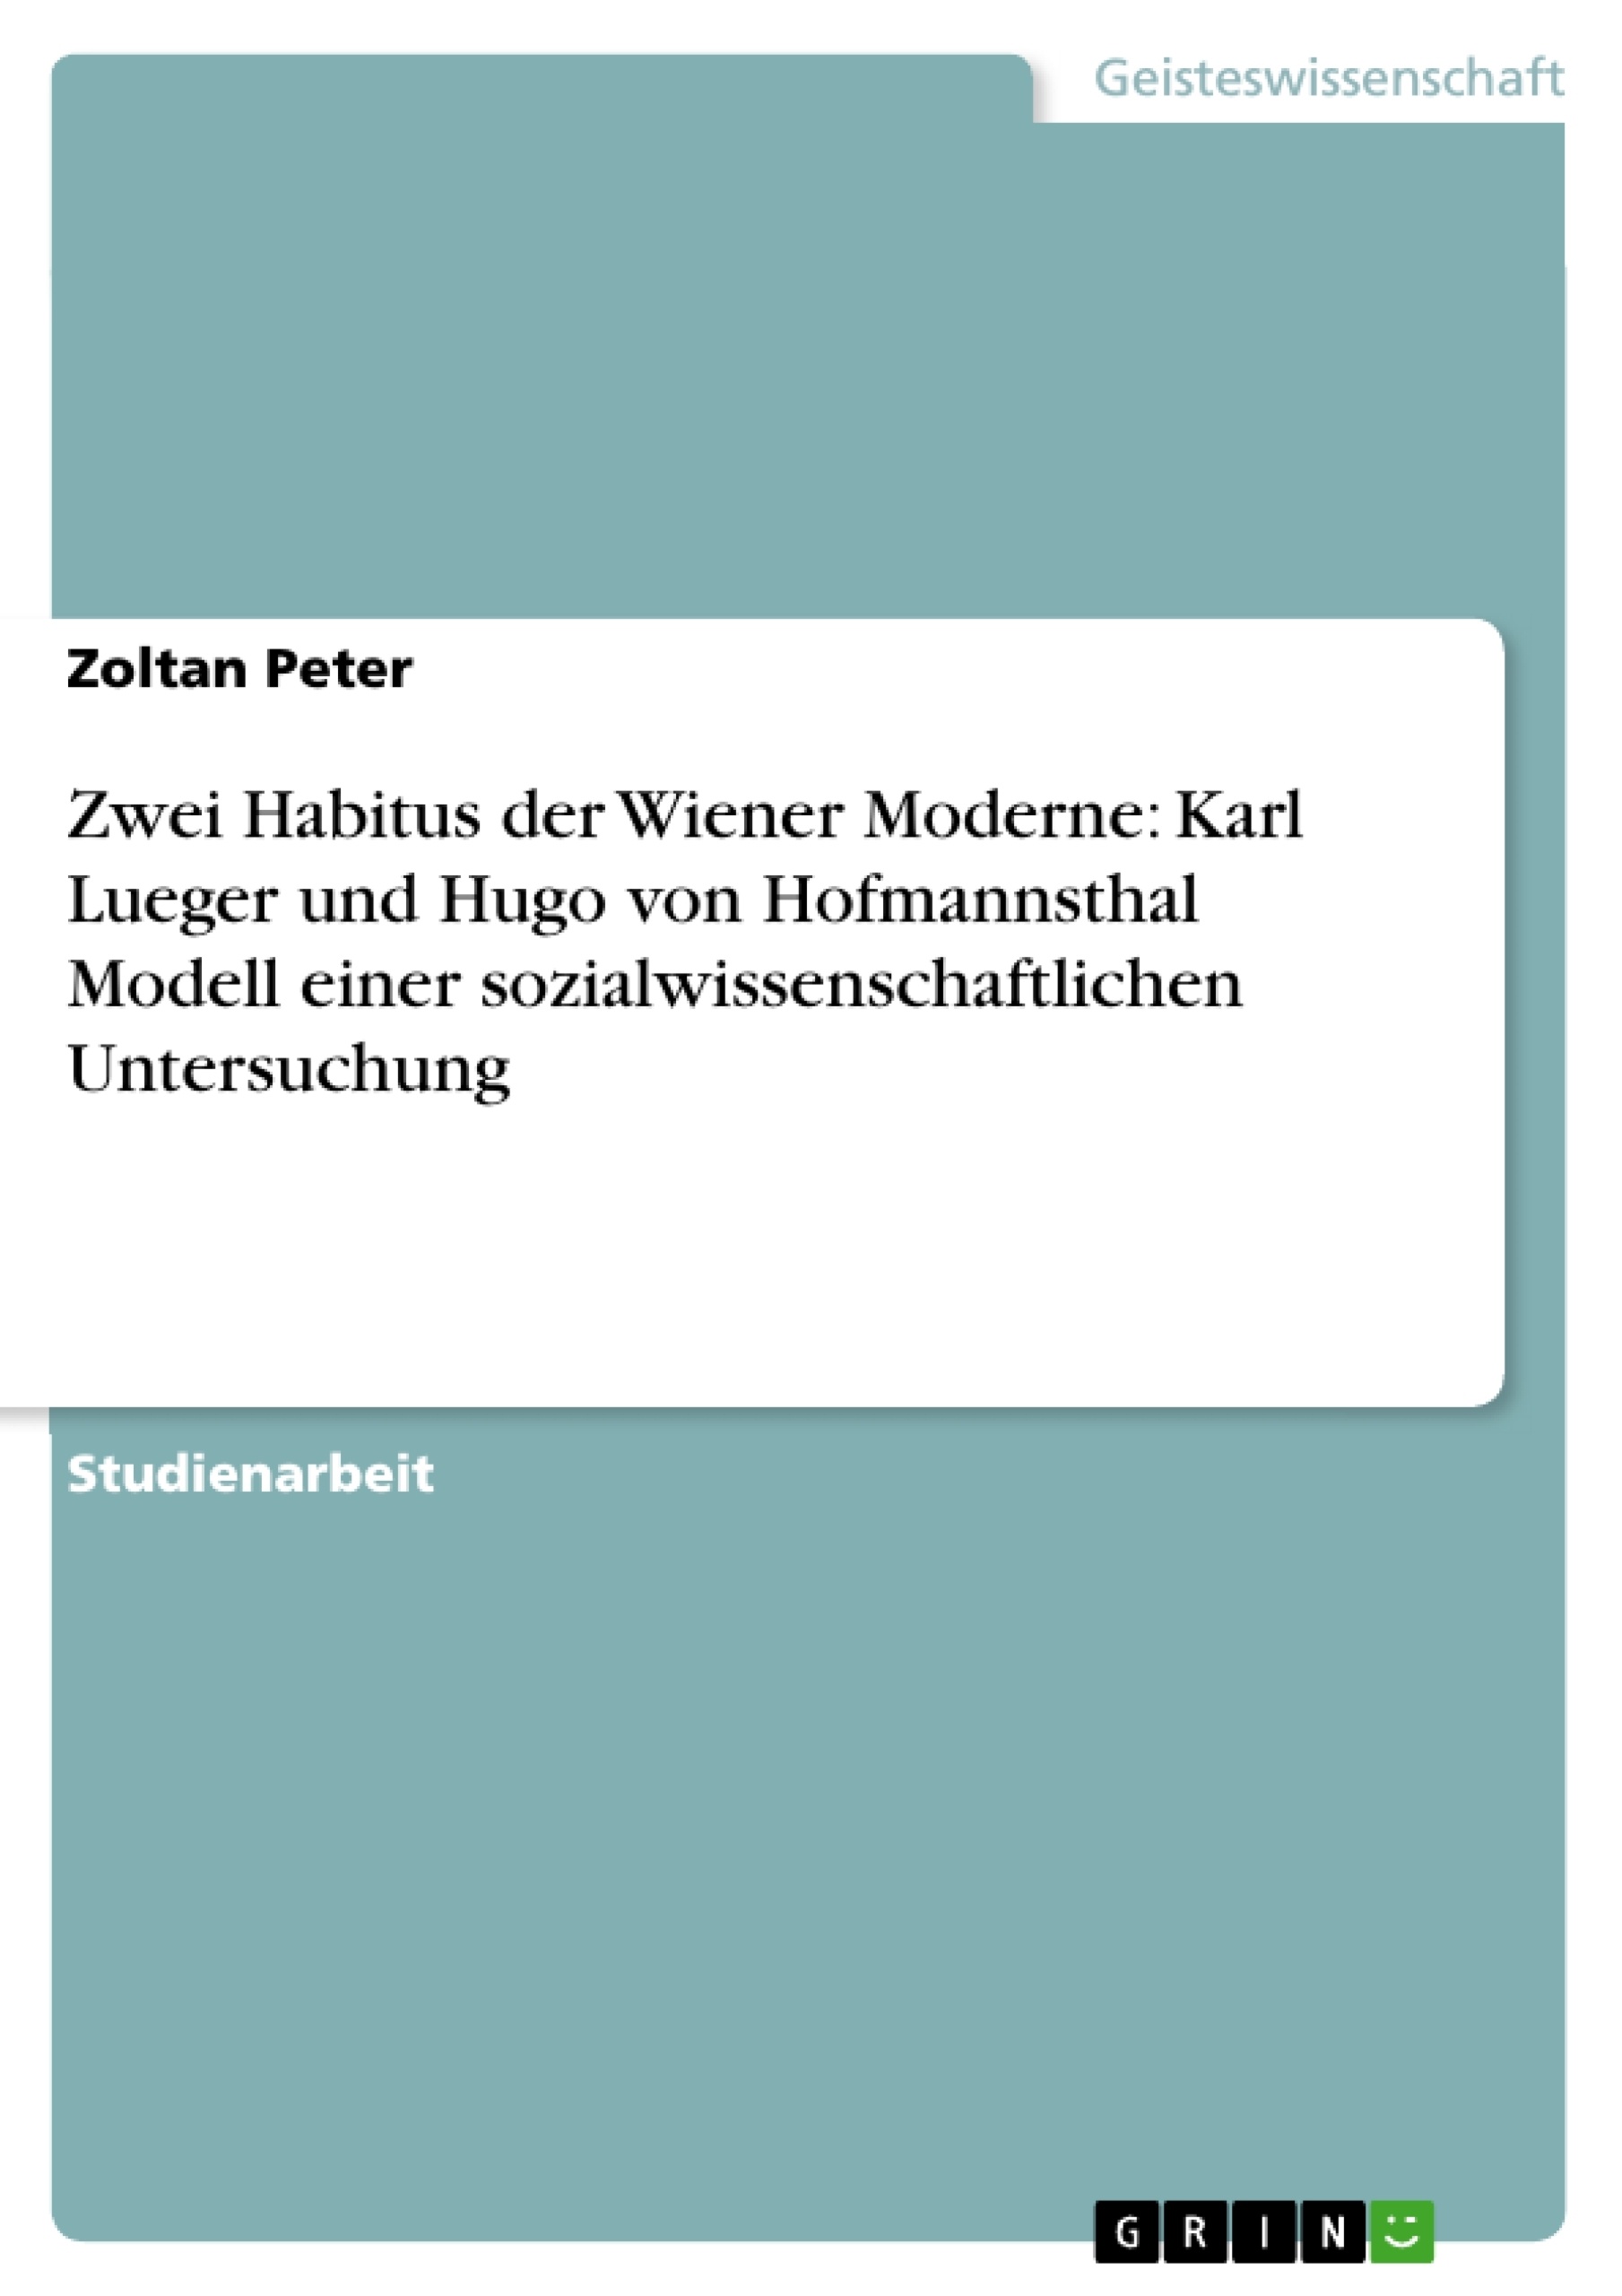 Titel: Zwei Habitus der Wiener Moderne: Karl Lueger und Hugo von Hofmannsthal  Modell einer sozialwissenschaftlichen Untersuchung